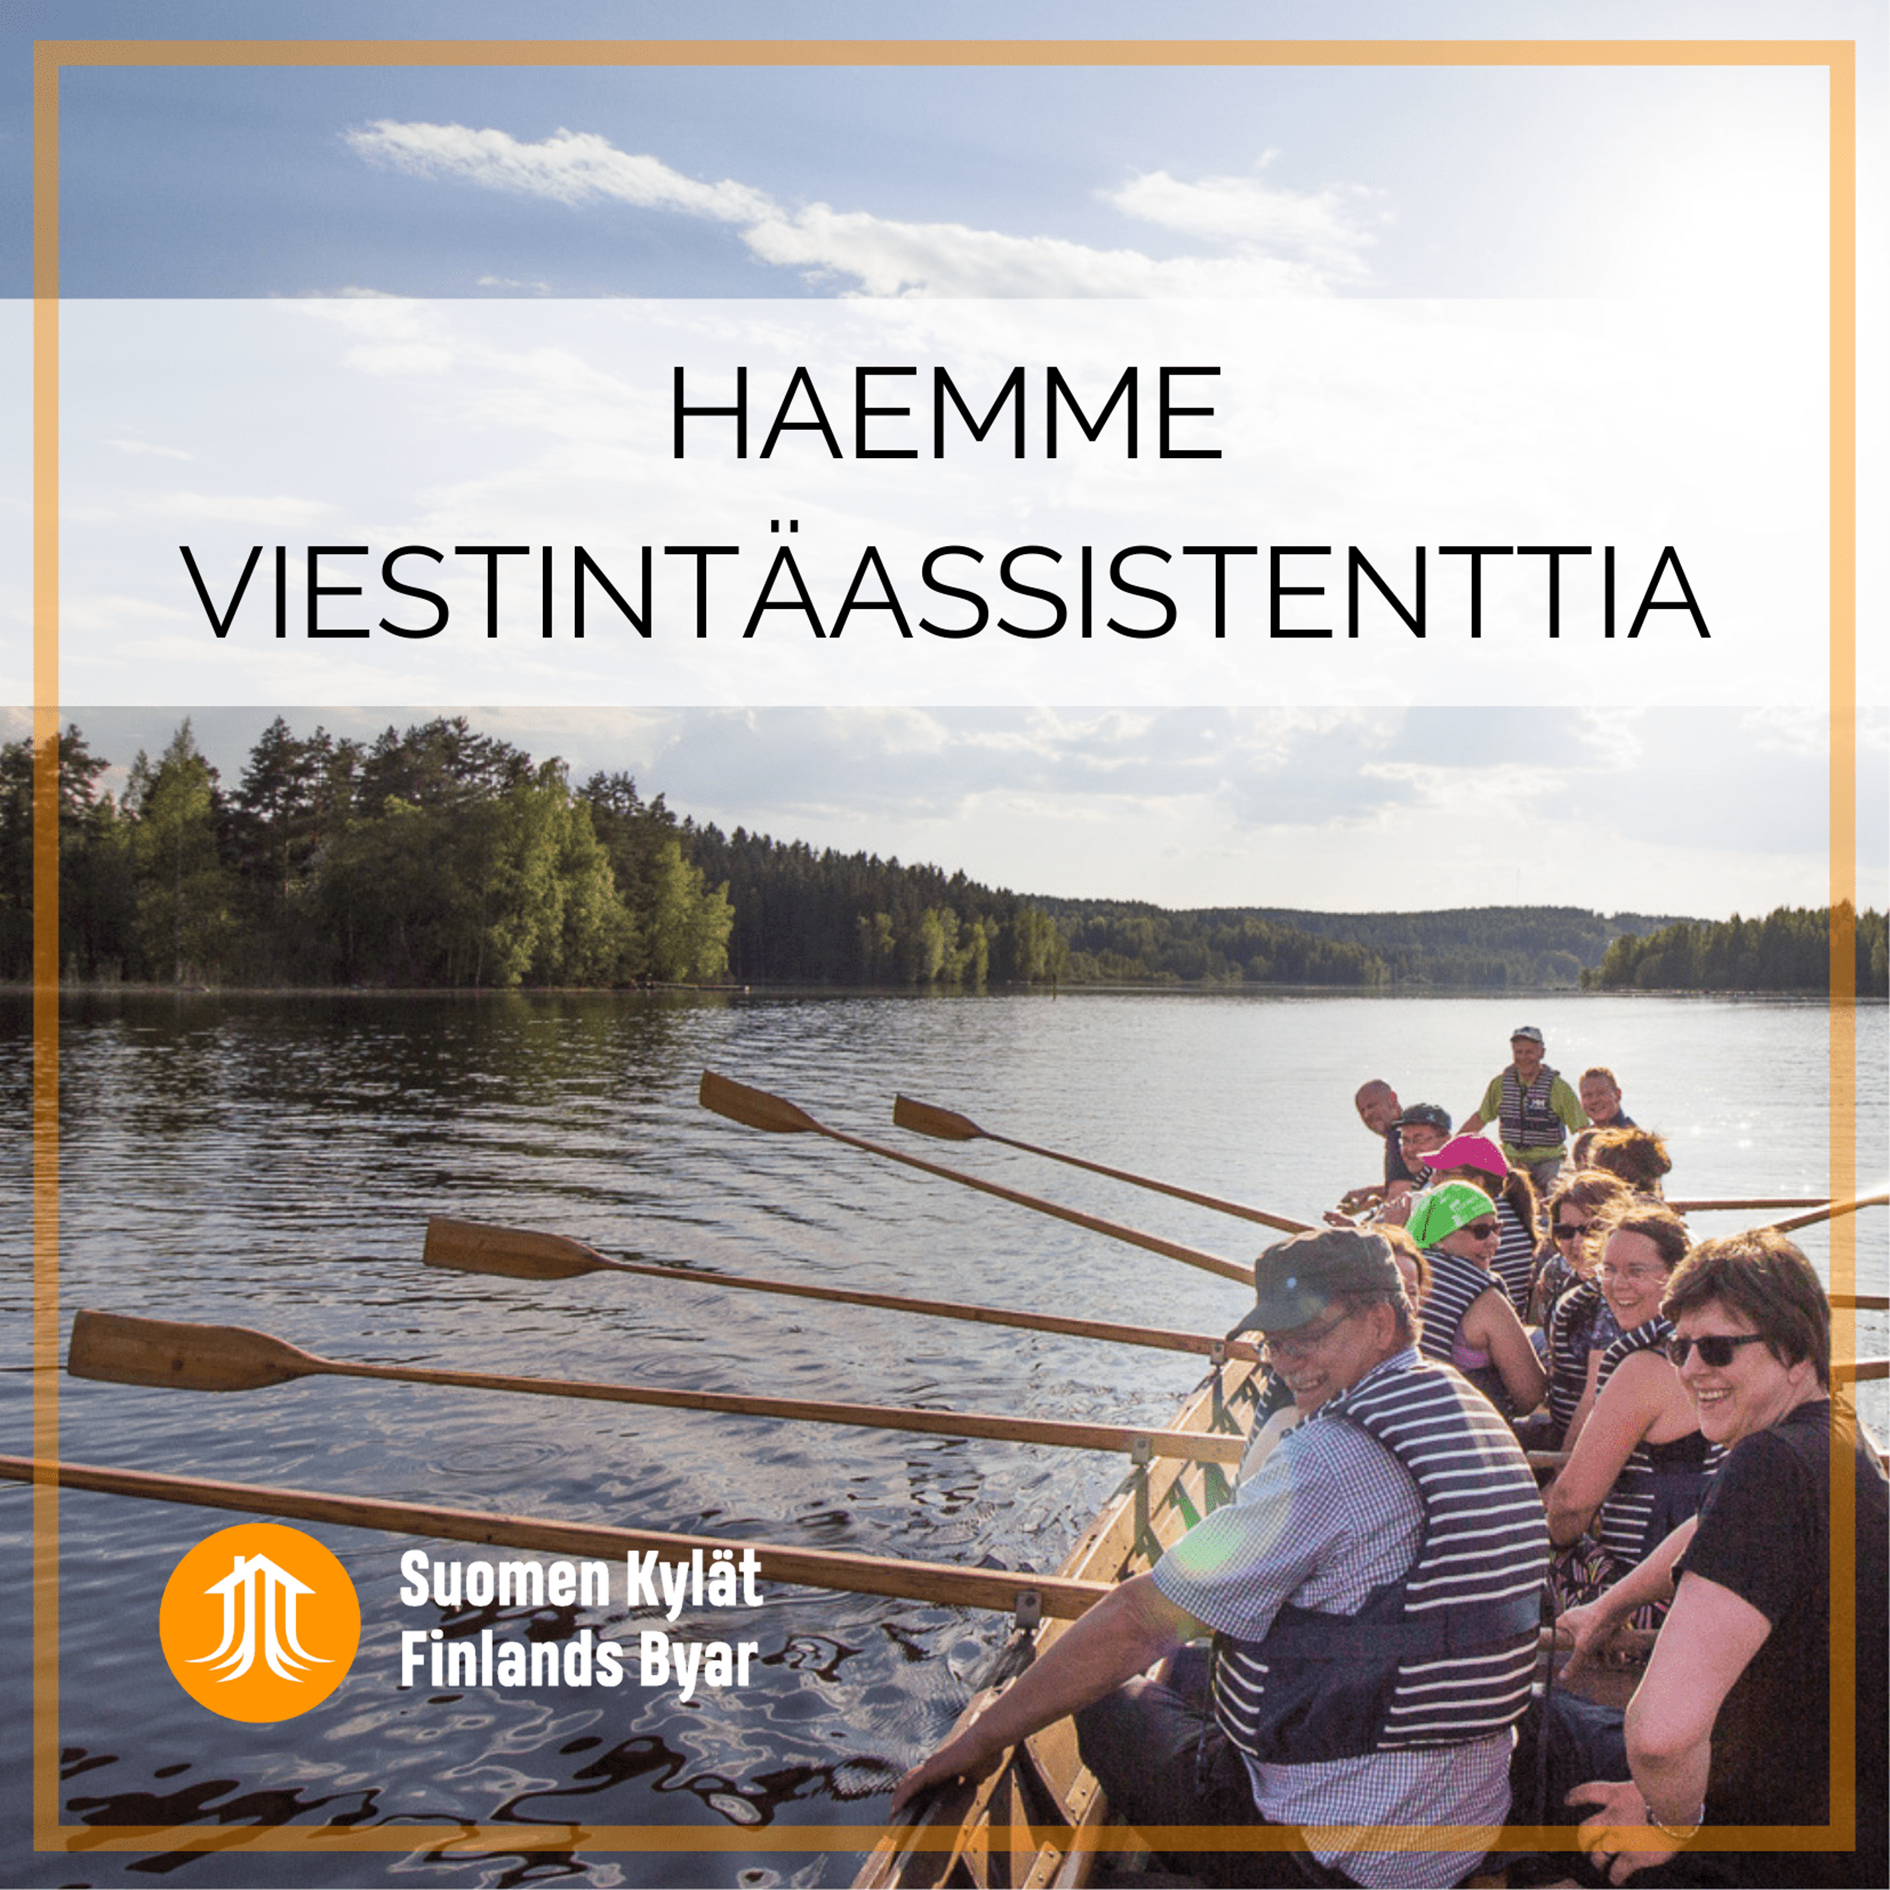 Finlands Byar - jobbannons kommunikationsassistent 2022 bild